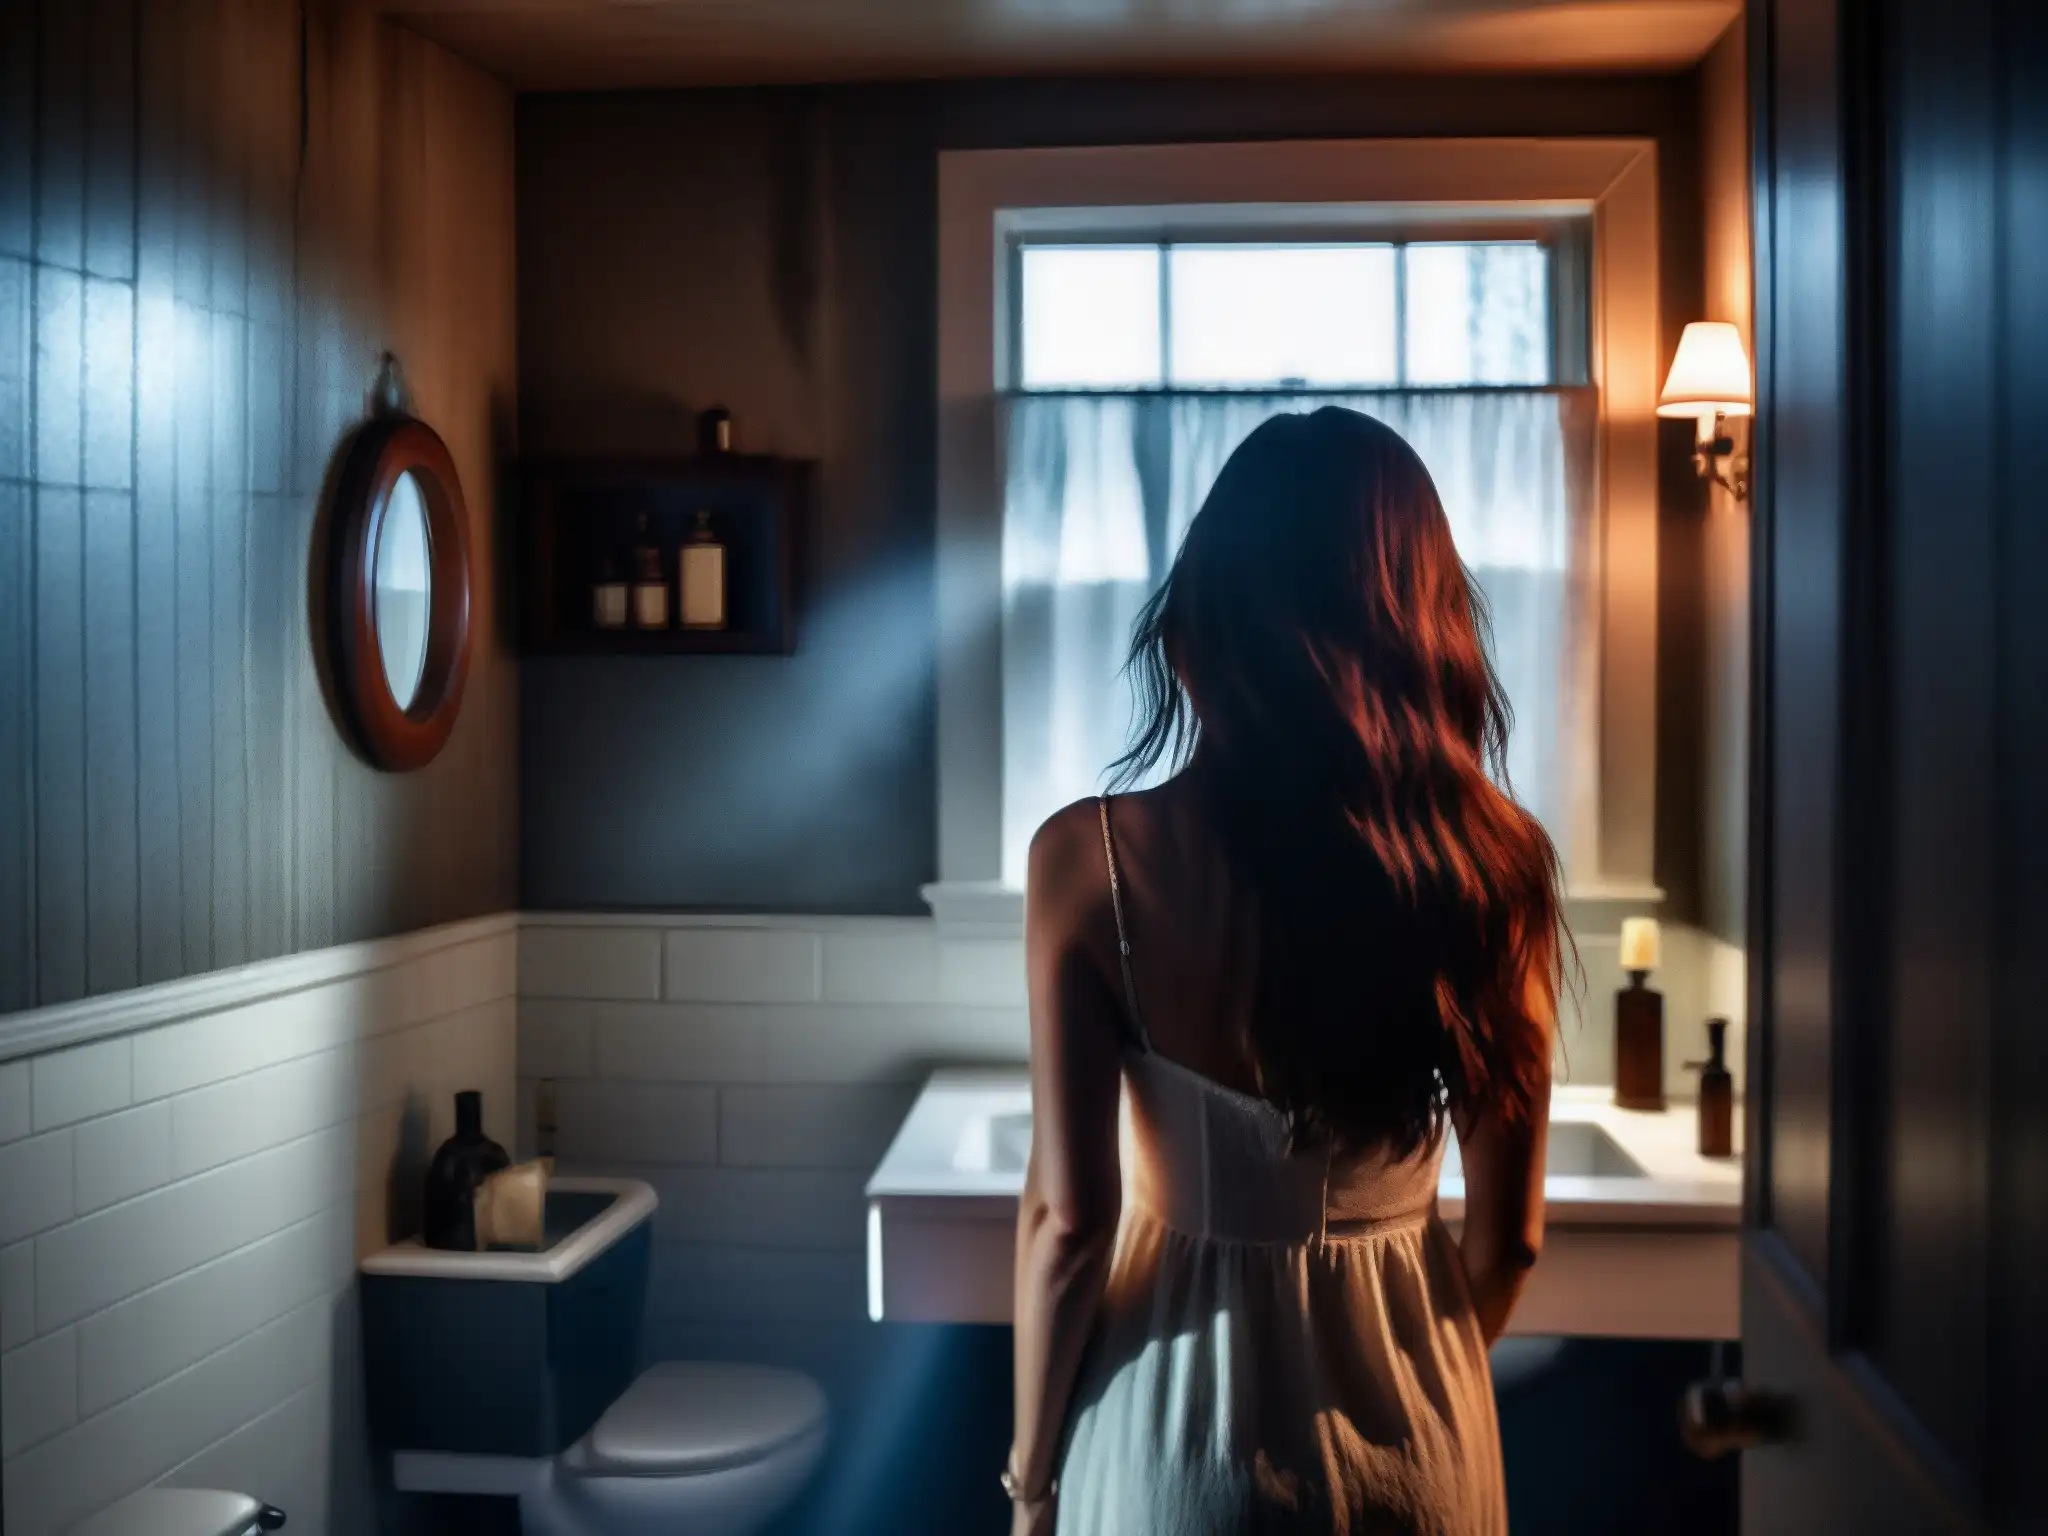 Reflejo fantasmal de una mujer en un baño lúgubre, capturando el origen histórico de Bloody Mary con una atmósfera sobrenatural